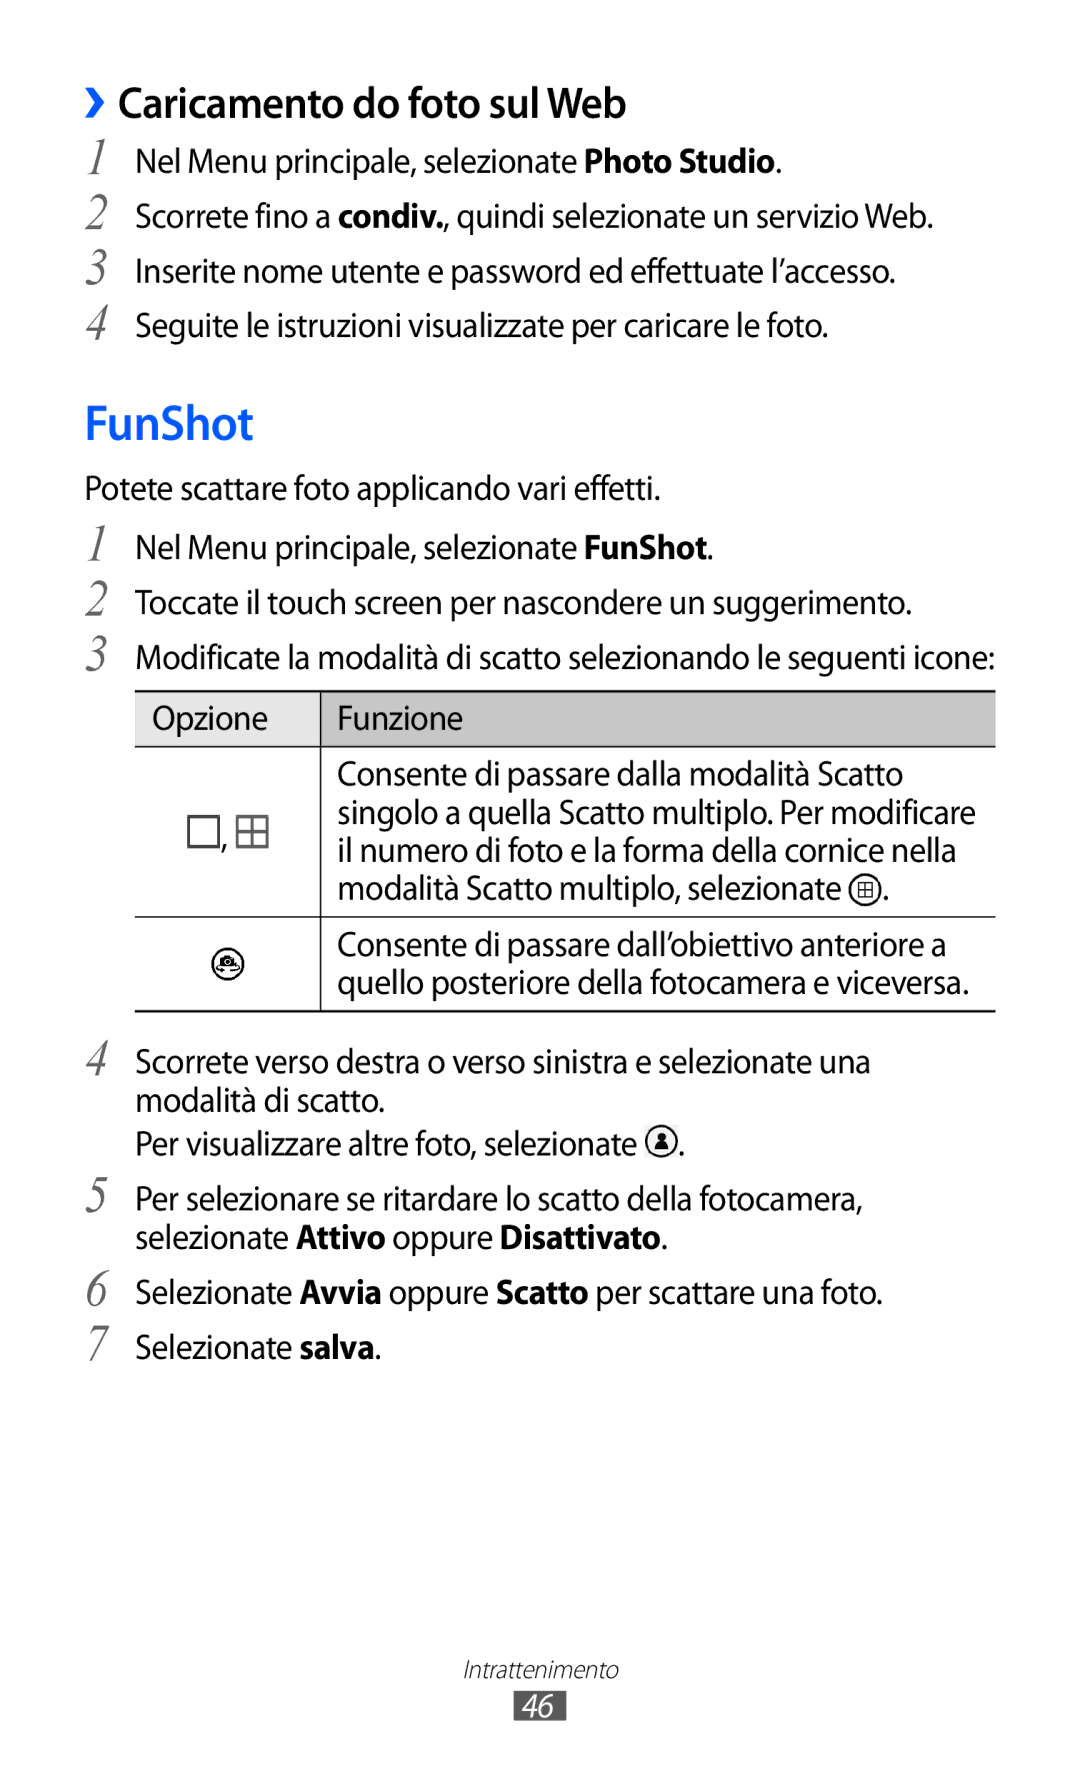 Samsung GT-I8350HKAHUI FunShot, ››Caricamento do foto sul Web, Opzione Funzione Consente di passare dalla modalità Scatto 